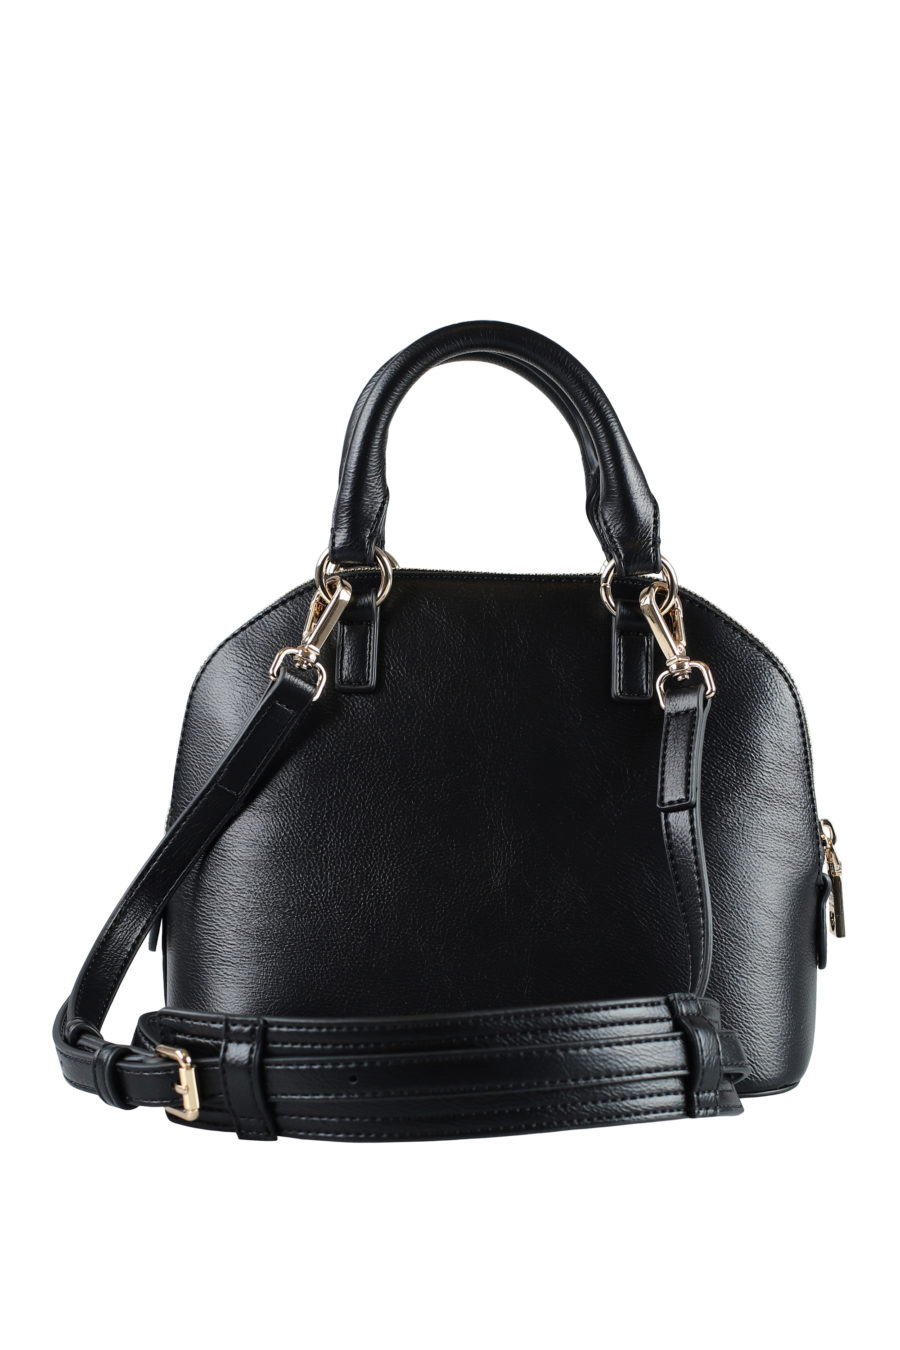 Black handbag with embroidered logo - IMG 1592